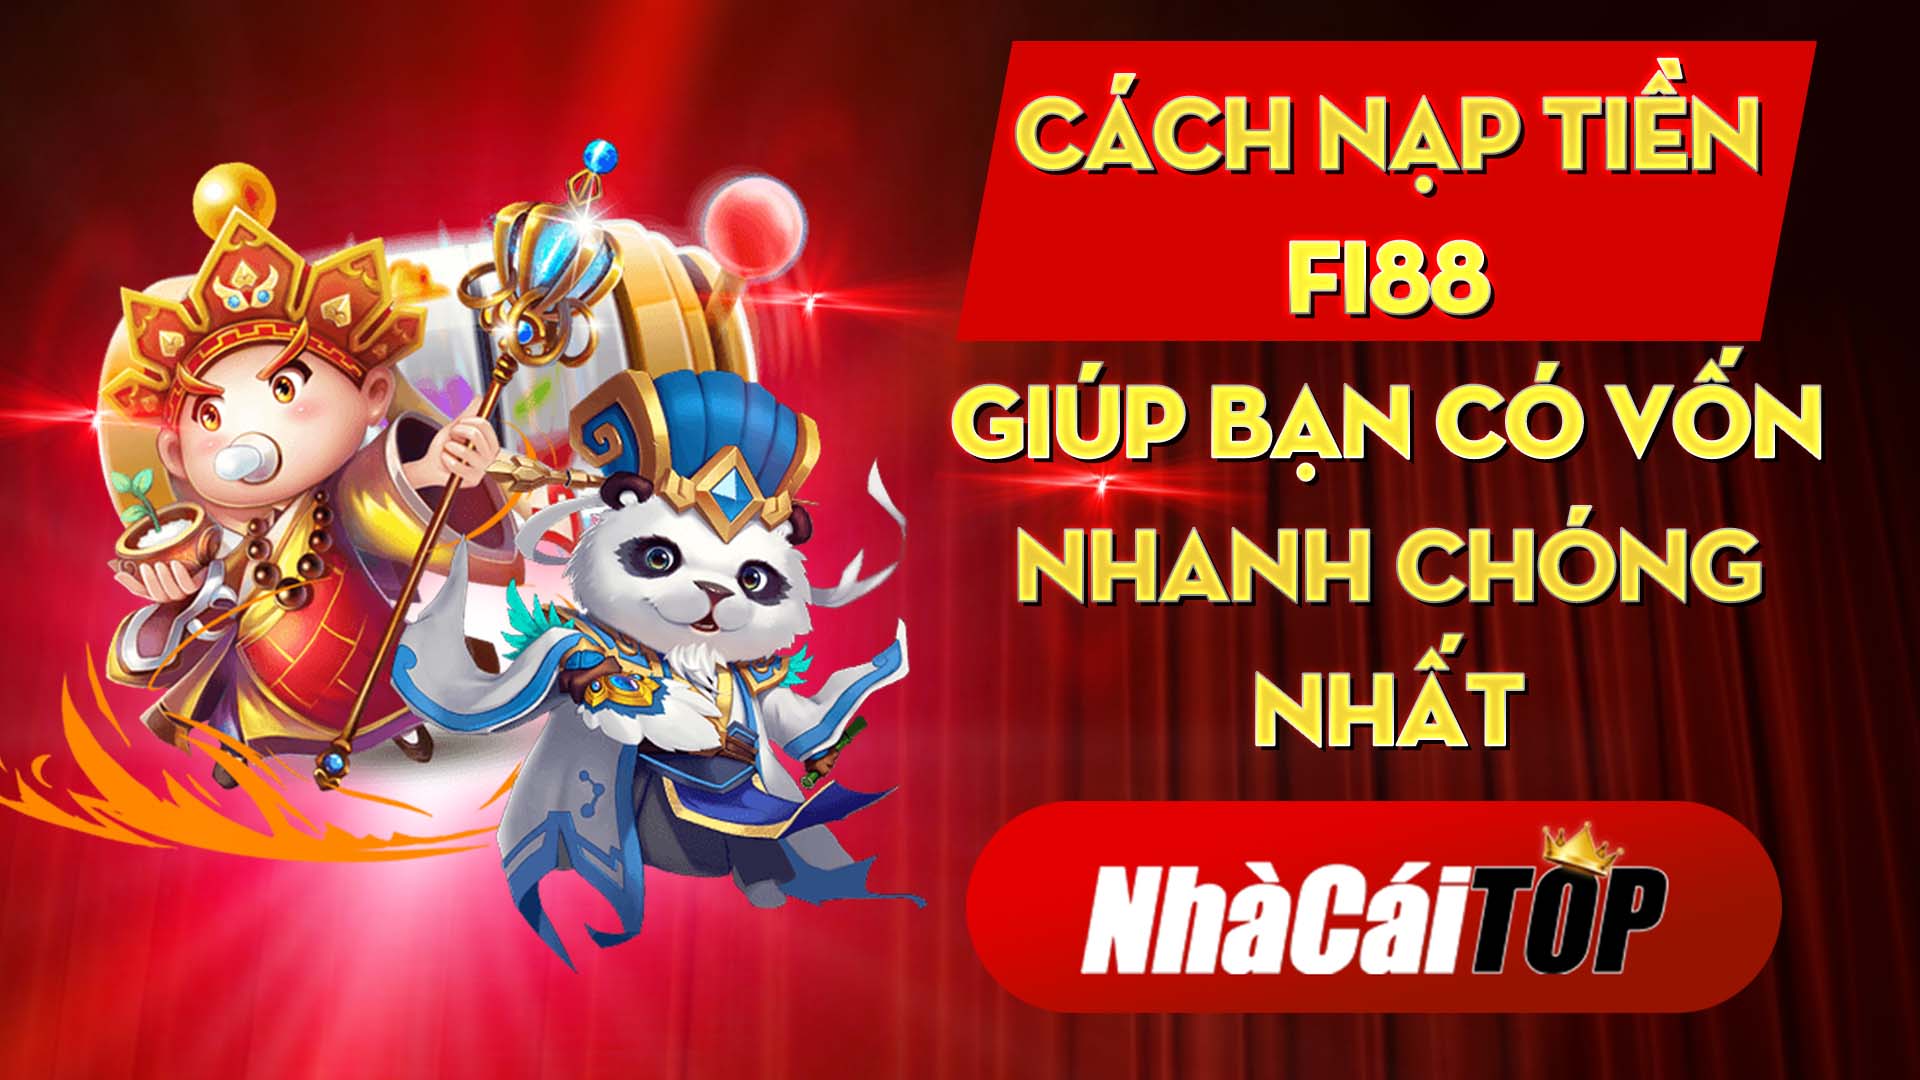 28 Cach Nap Tien Fi88 Giup Ban Co Von Nhanh Chong Nhat